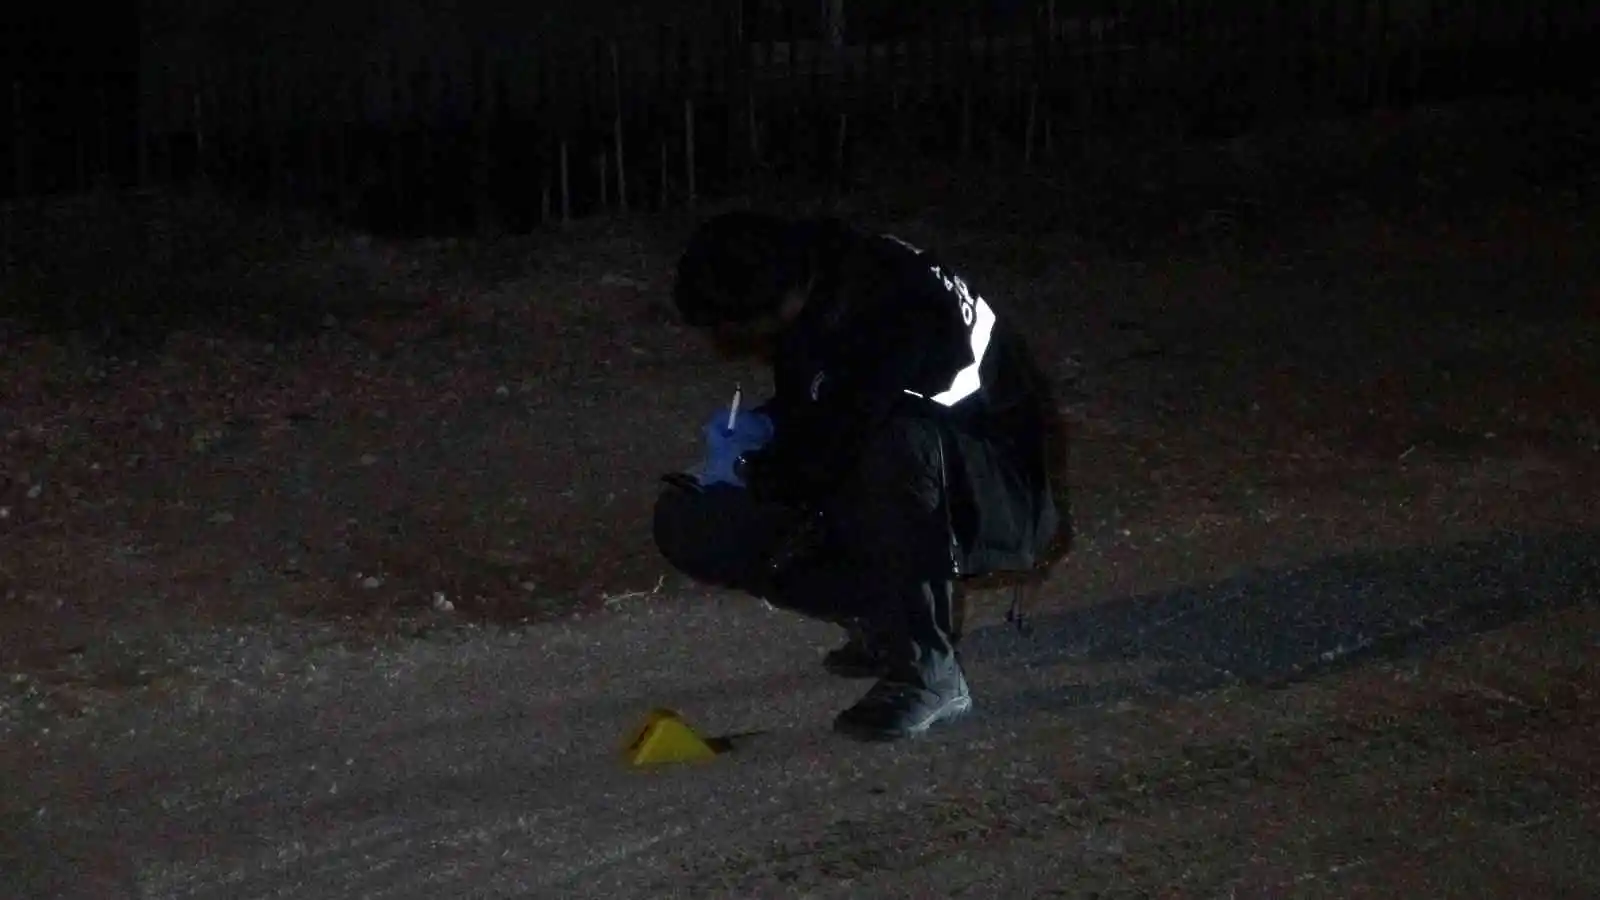 Bursa’ya çalışmak için gelen kişi, 2 saat sonra silahla vuruldu
